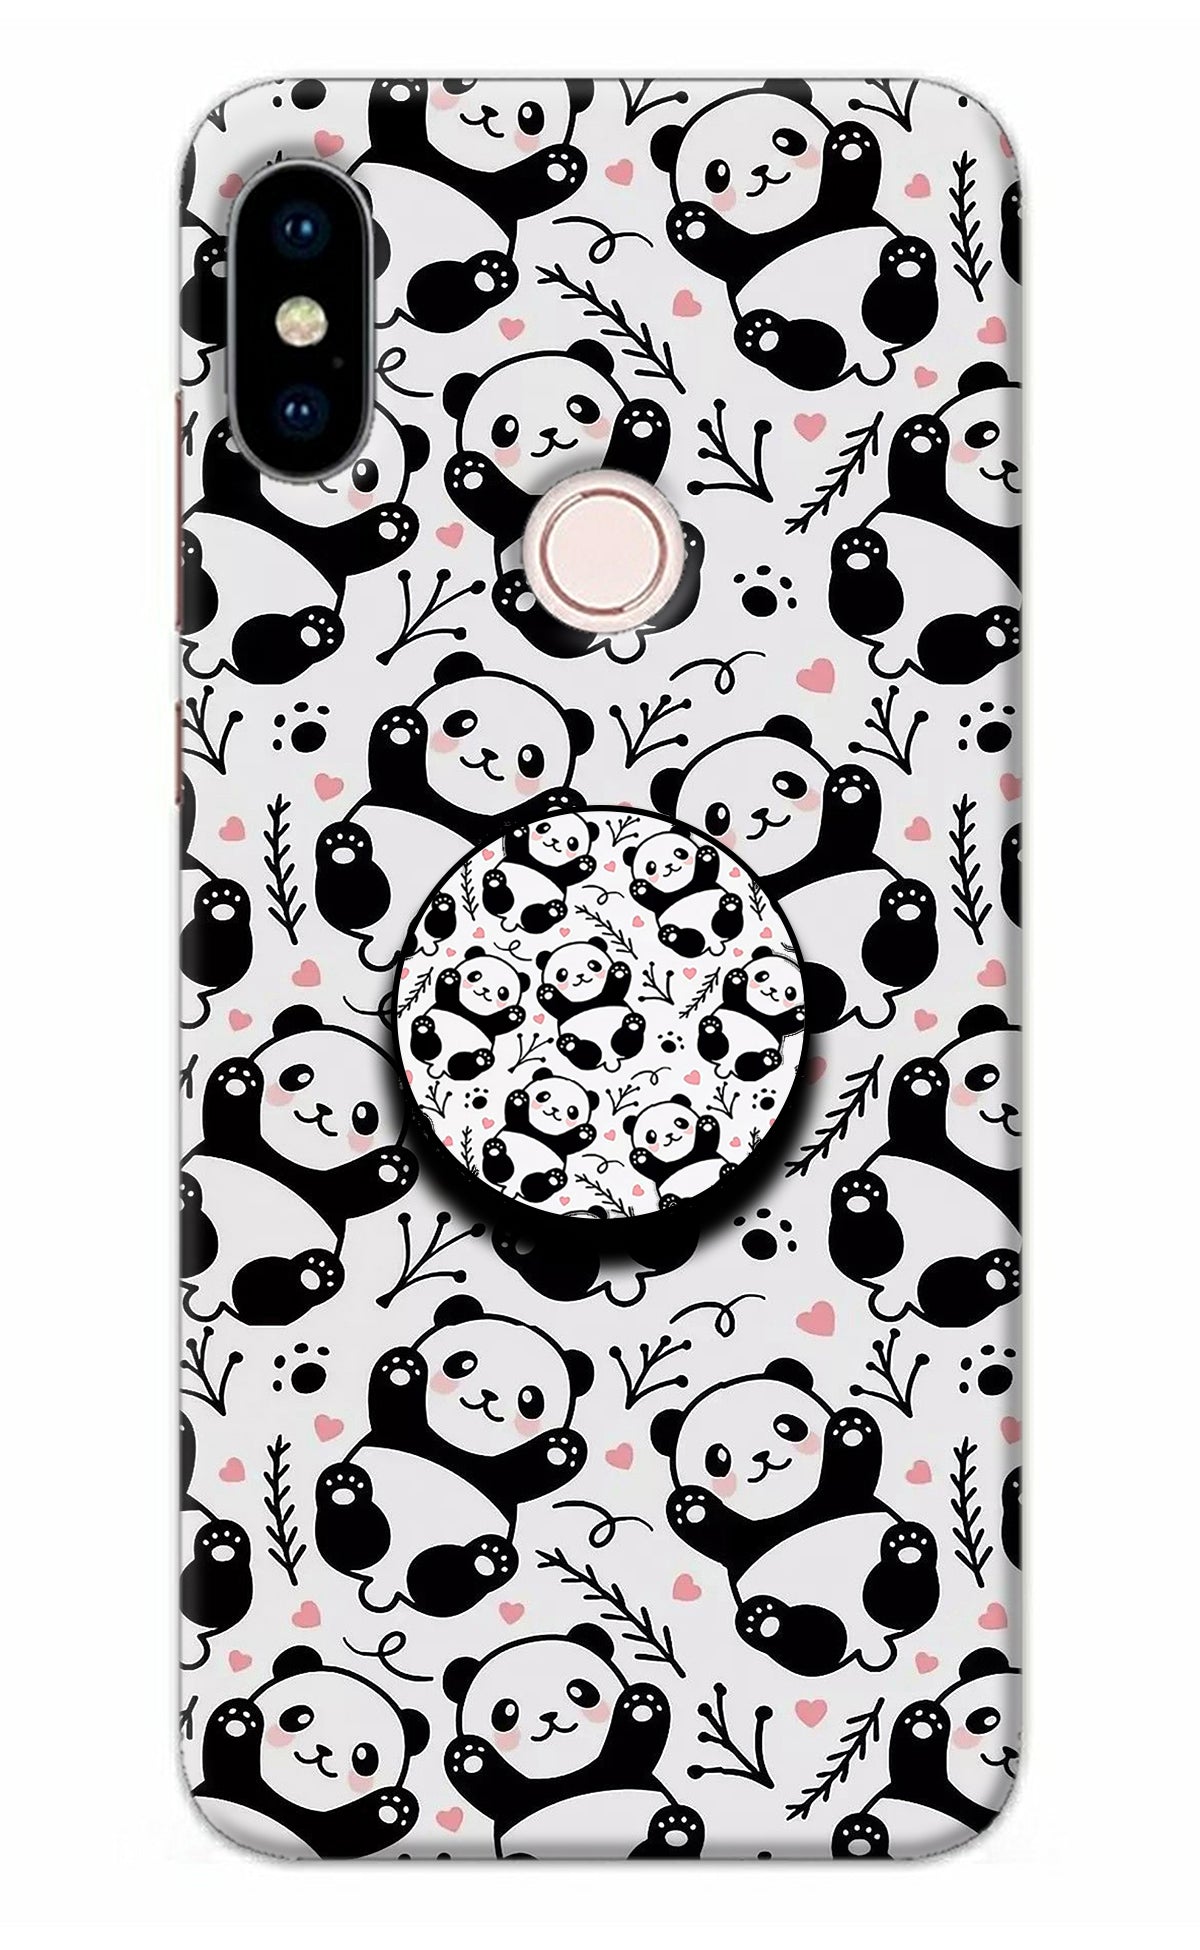 Cute Panda Redmi Note 5 Pro Pop Case